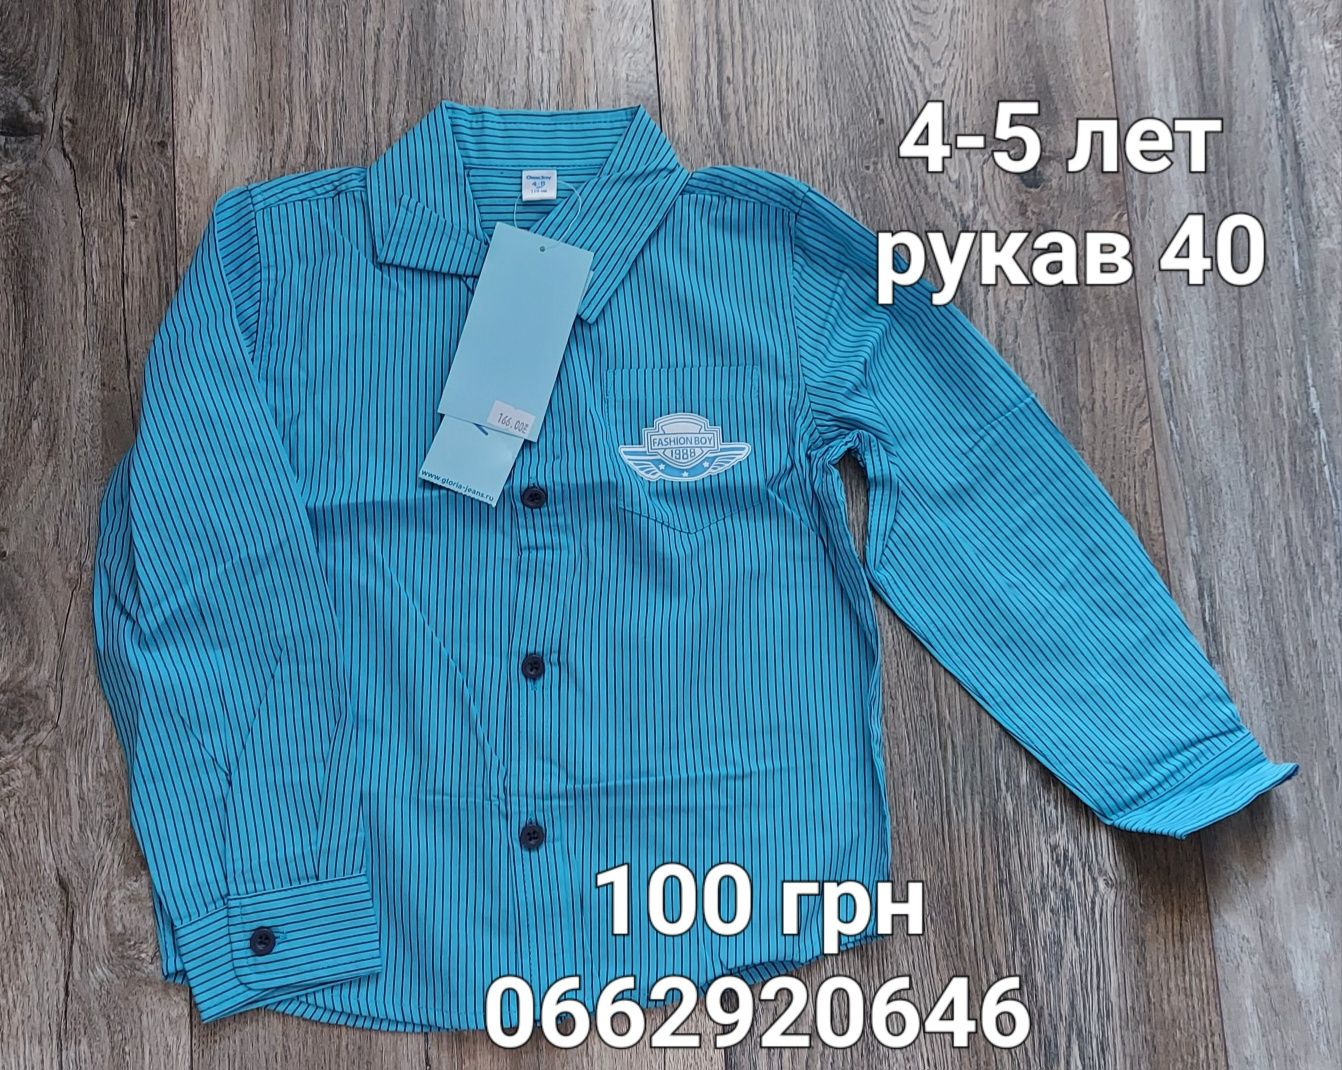 Пиджак / жакет cool club 110, рубашка